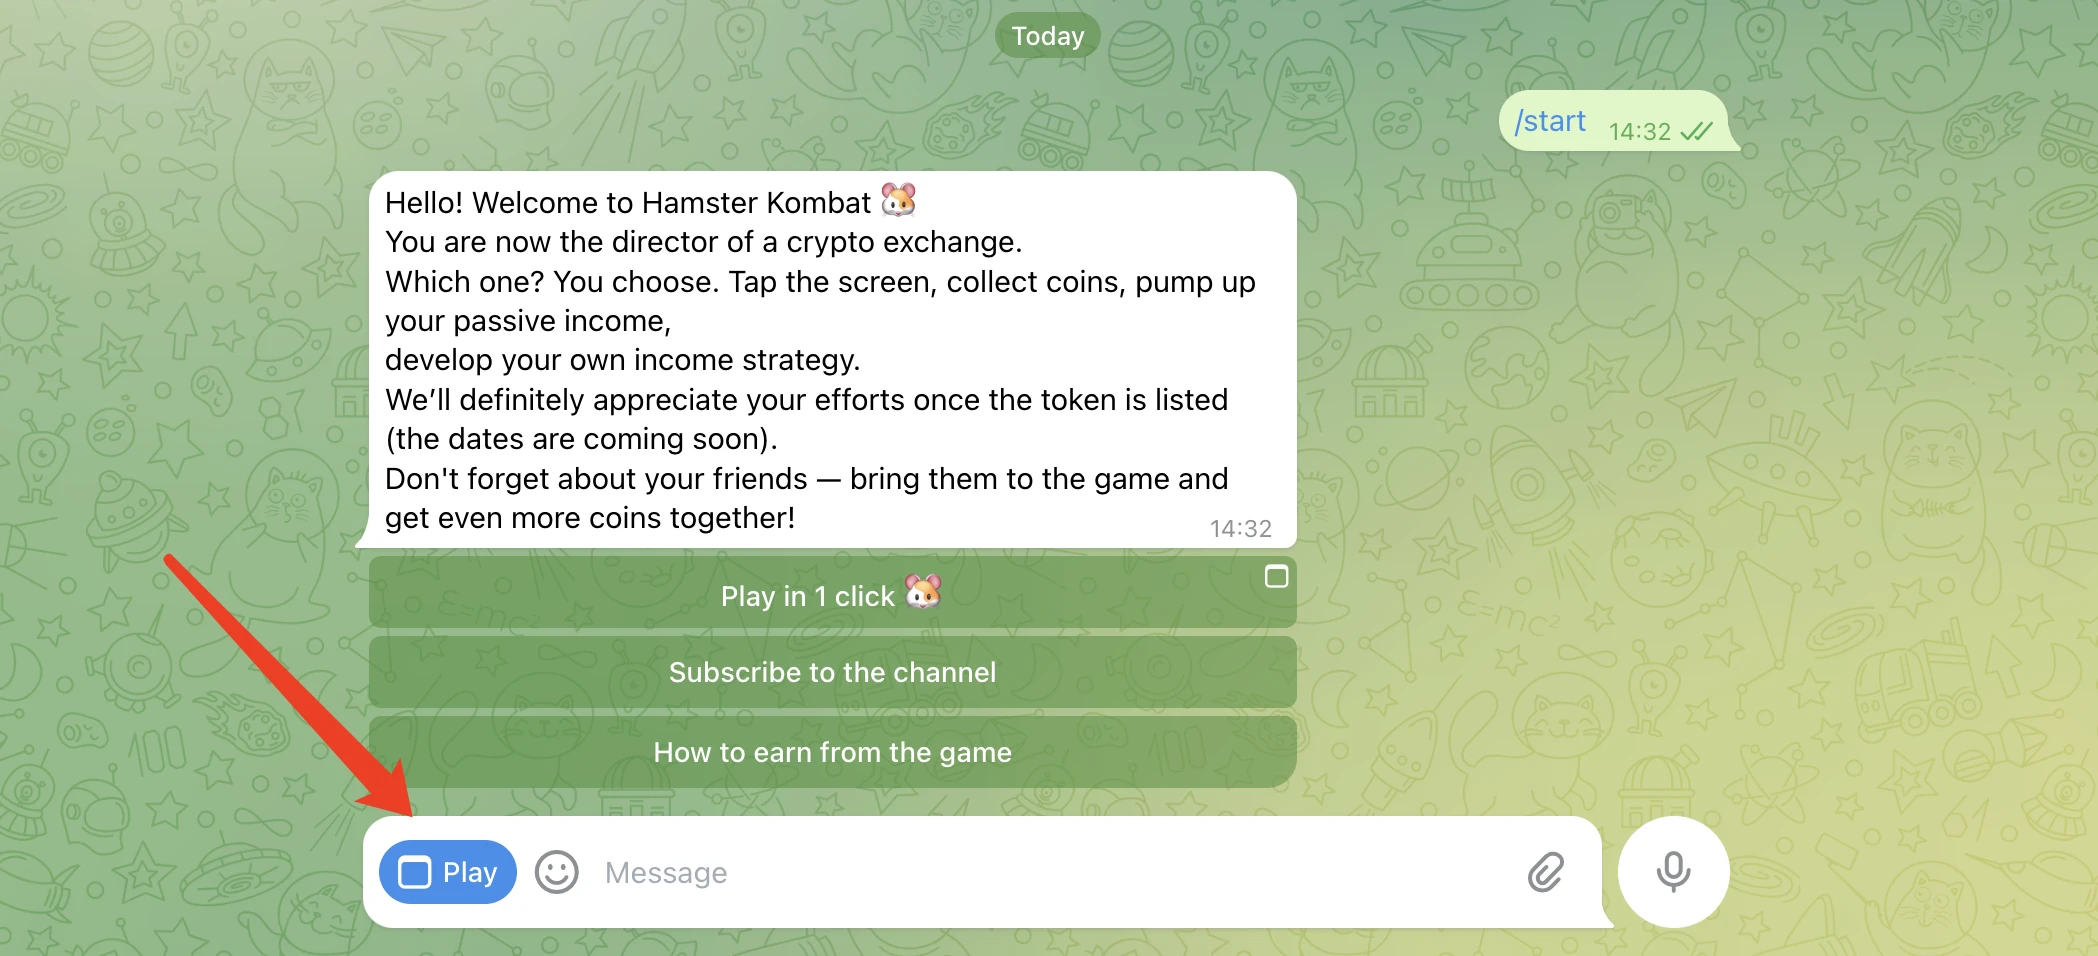 人気ゲーム「ハムスターコンバット」：登録ユーザー数2億人突破、TON公式が「GameFi Hunter」について何度も言及